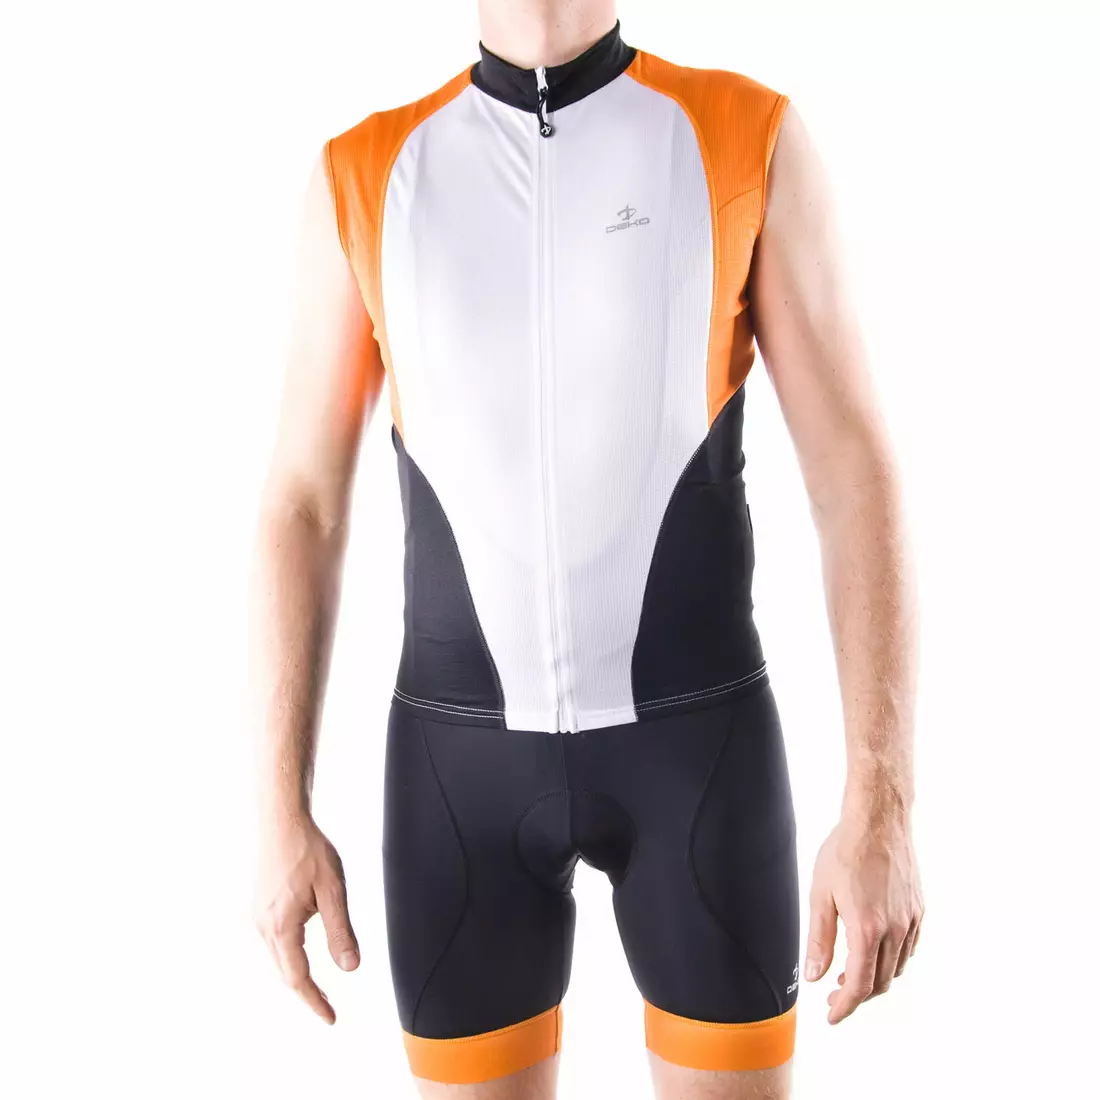 DEKO HAITI II pánský cyklistický dres bez rukávů, bílooranžový